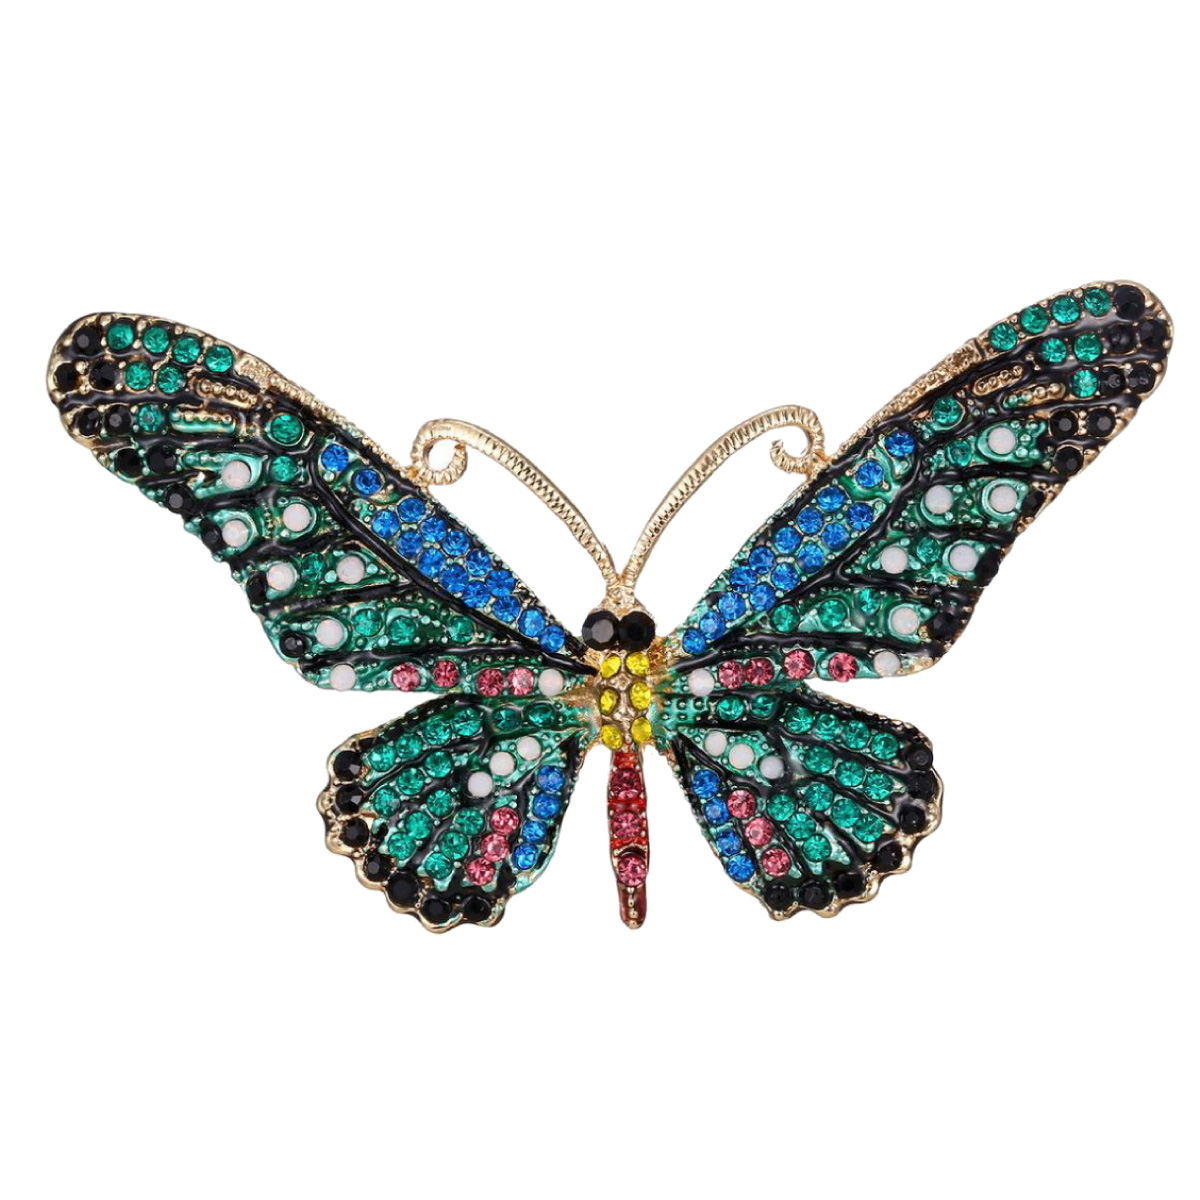 ブローチ 蝶 バタフライ 虫 ラインストーン パヴェ キラキラ おしゃれ カジュアル 個性的 ユニーク